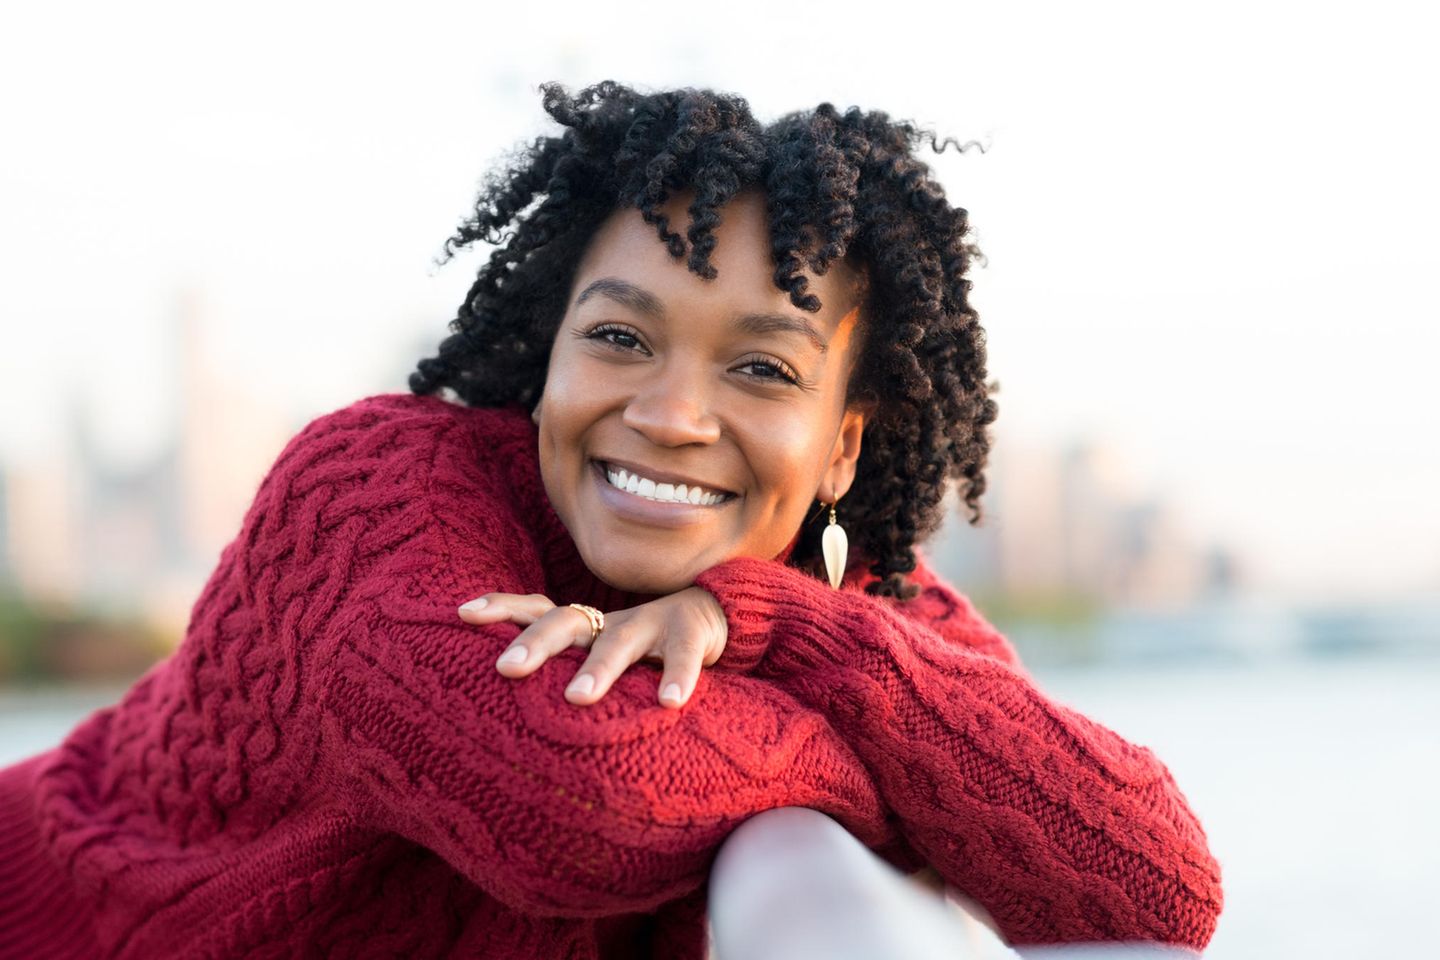 Persönlichkeit: Lachende Frau trägt roten Wollpullover